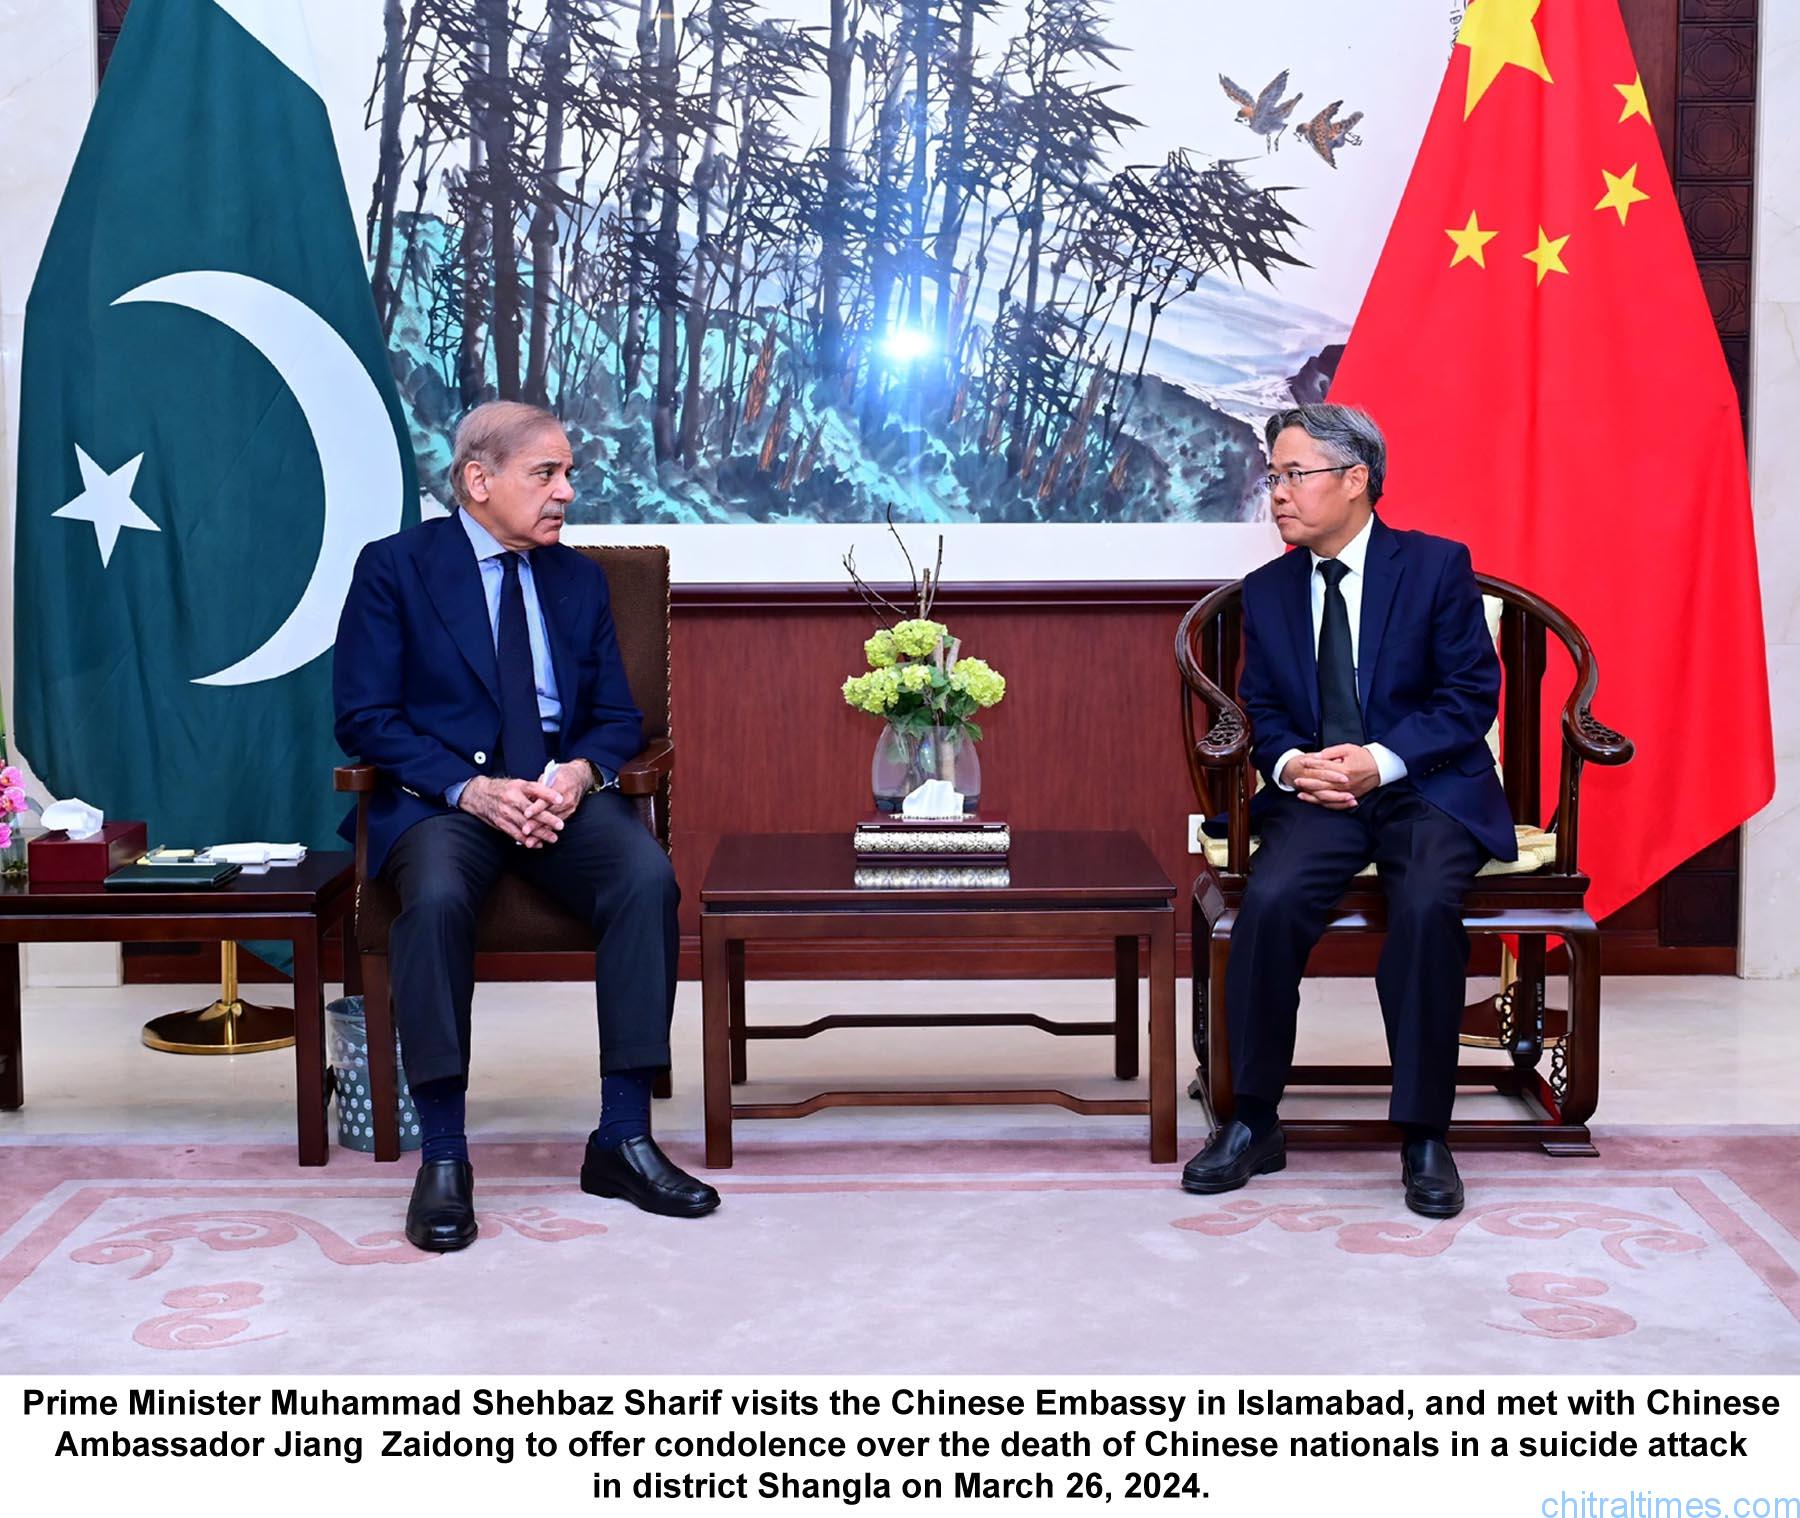 وزیرِ اعظم محمد شہباز شریف کا چینی سفارتخانہ کا دورہ، چین کے پاکستان میں سفیر سے بشام میں دہشت گرد حملے میں 5 چینی باشندوں کی ہلاکت پر اظہار تعزیت